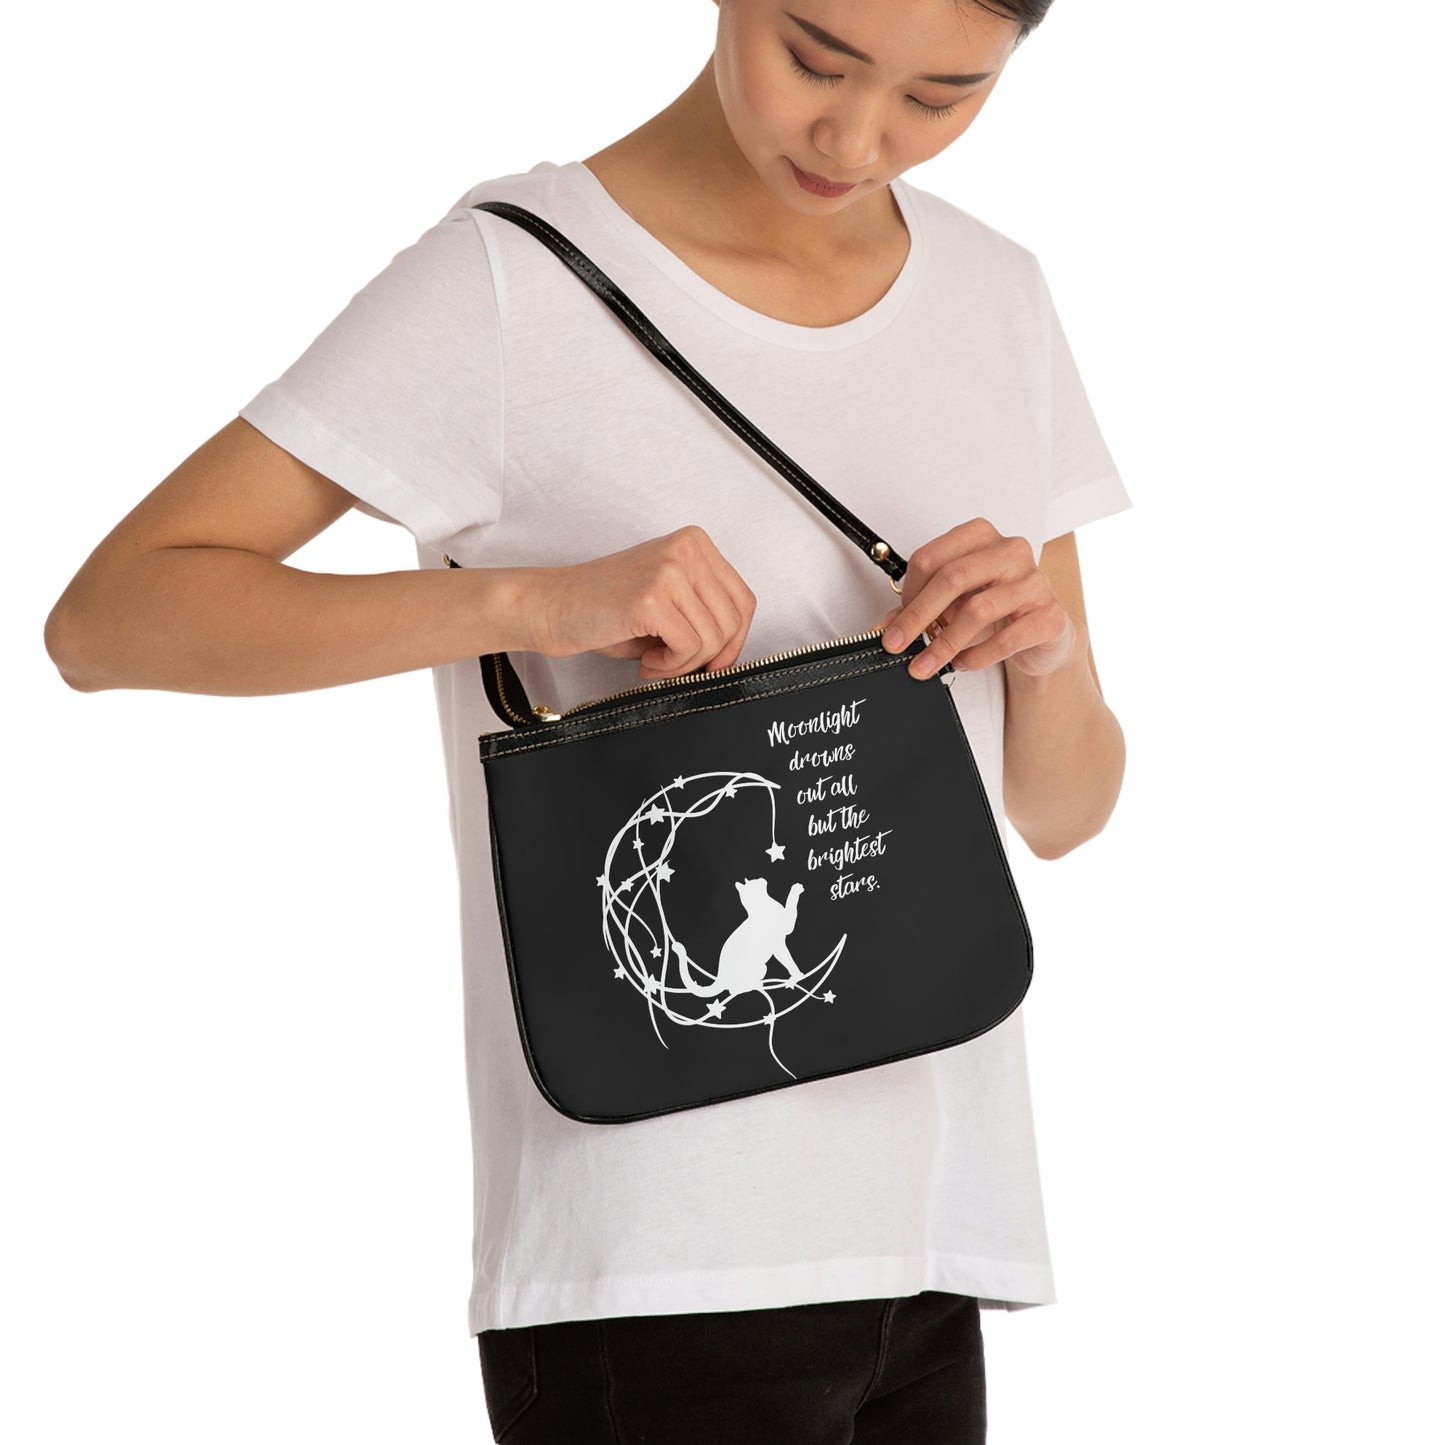 Cat and moon Small Shoulder Bag, aesthetic crossbody bag, celestial bag, cat lover gift, gift for her, dreamer gift, fantasy Small Bag